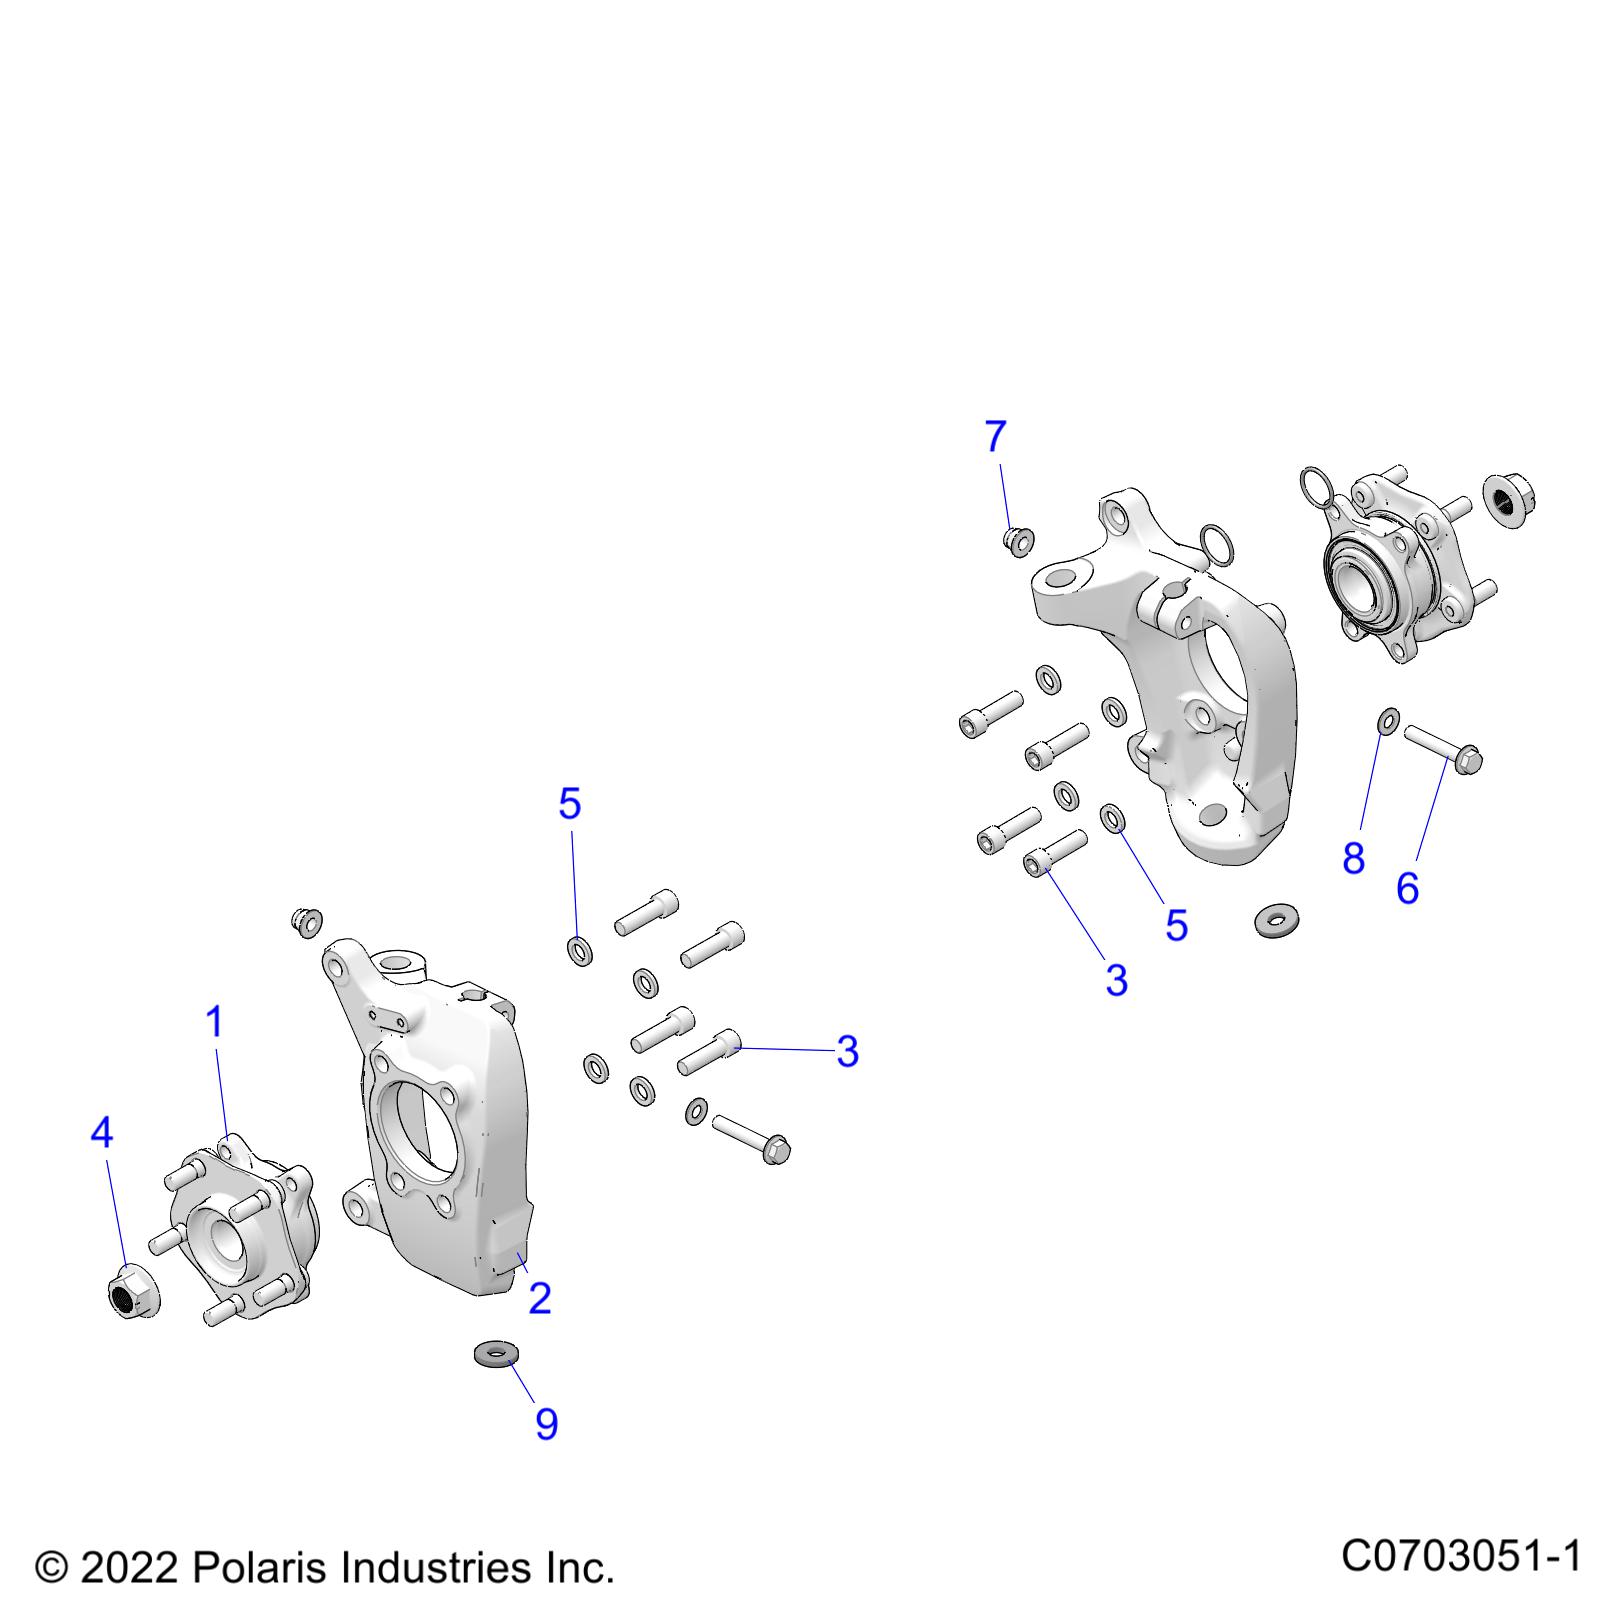 Foto diagrama Polaris que contem a peça 7557160